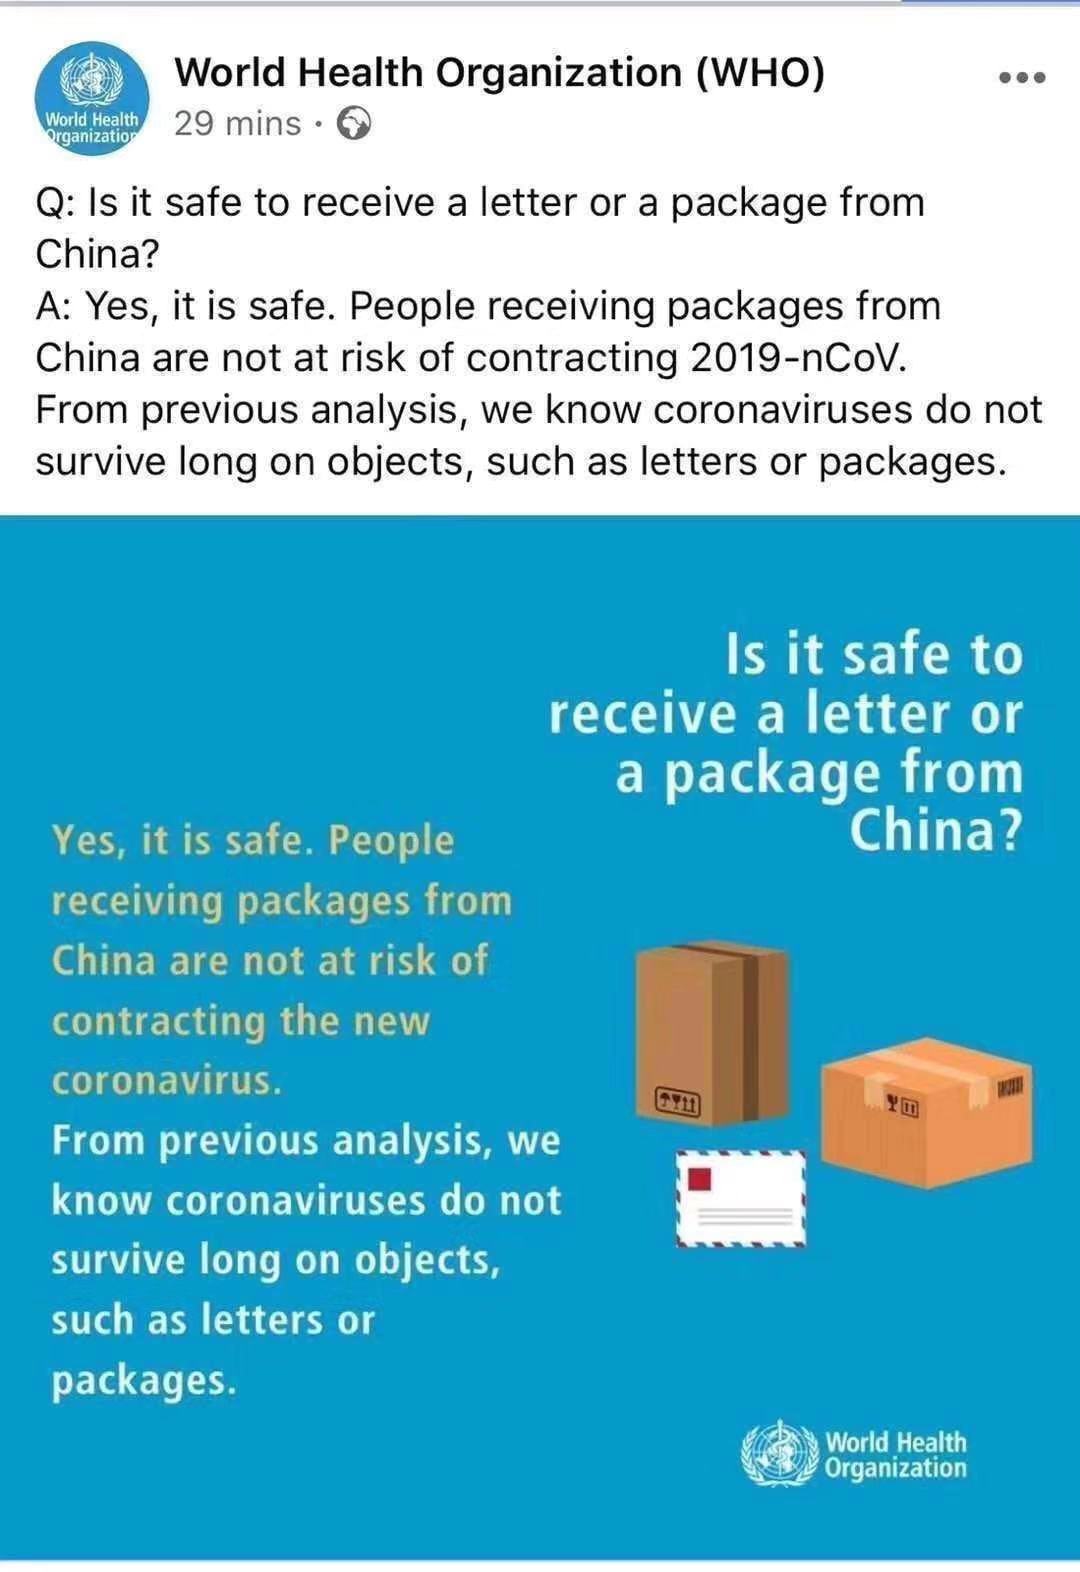 Biztonságos levelet vagy csomagot kapni Kínából?
        